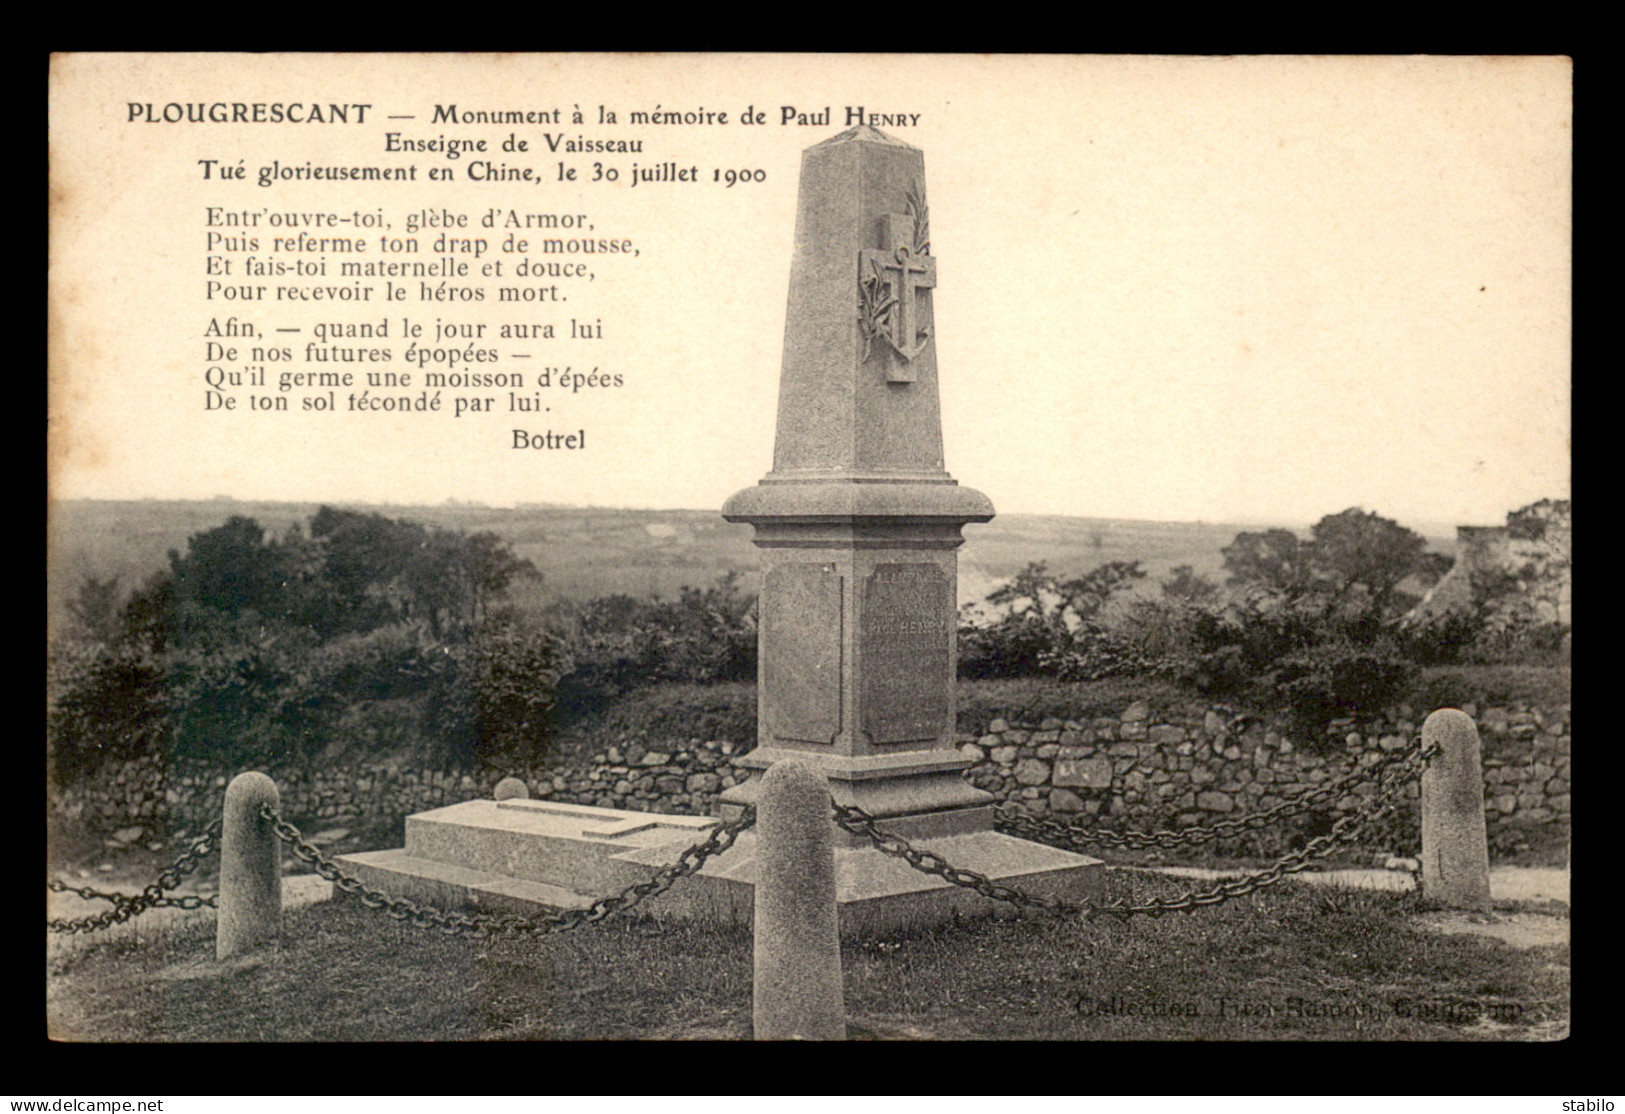 22 - PLOUGRESCANT - MONUMENT A LA MEMOIRE DE PAUL HENRY, ENSEIGNE DE VAISSEAU, TUE EN CHINE EN 1900 - TEXTE DE BOTREL - Plougrescant